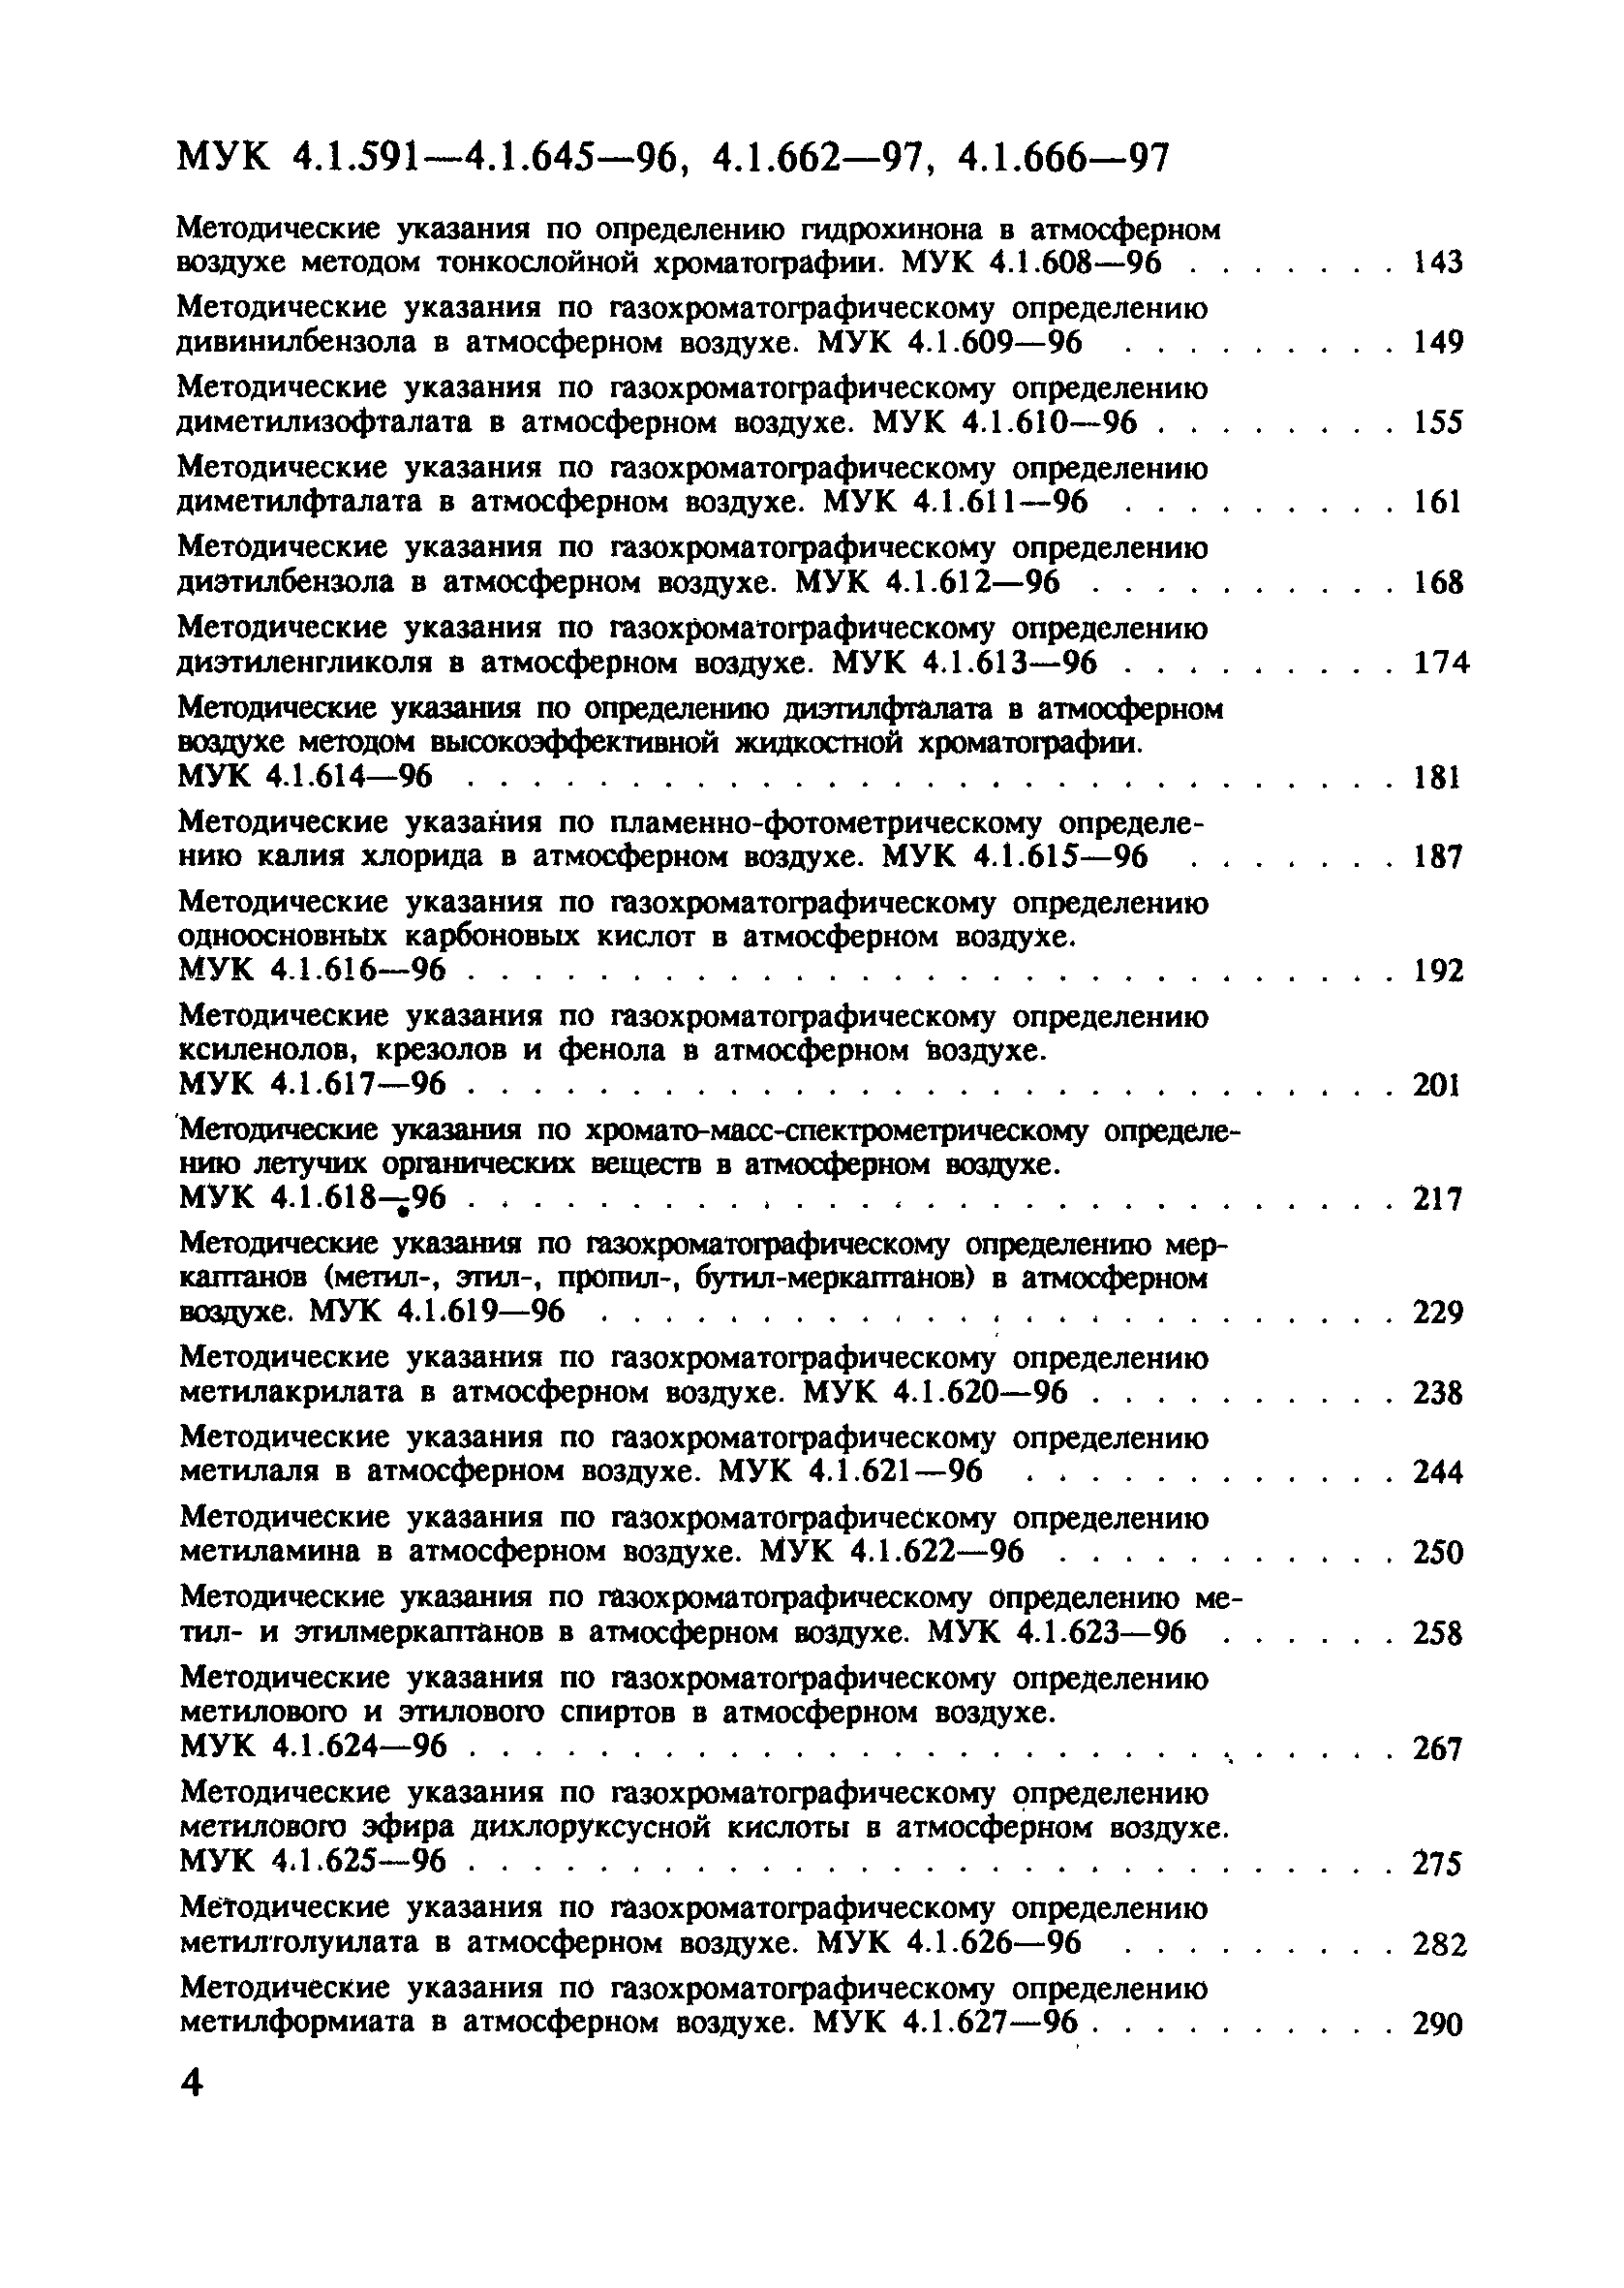 МУК 4.1.624-96